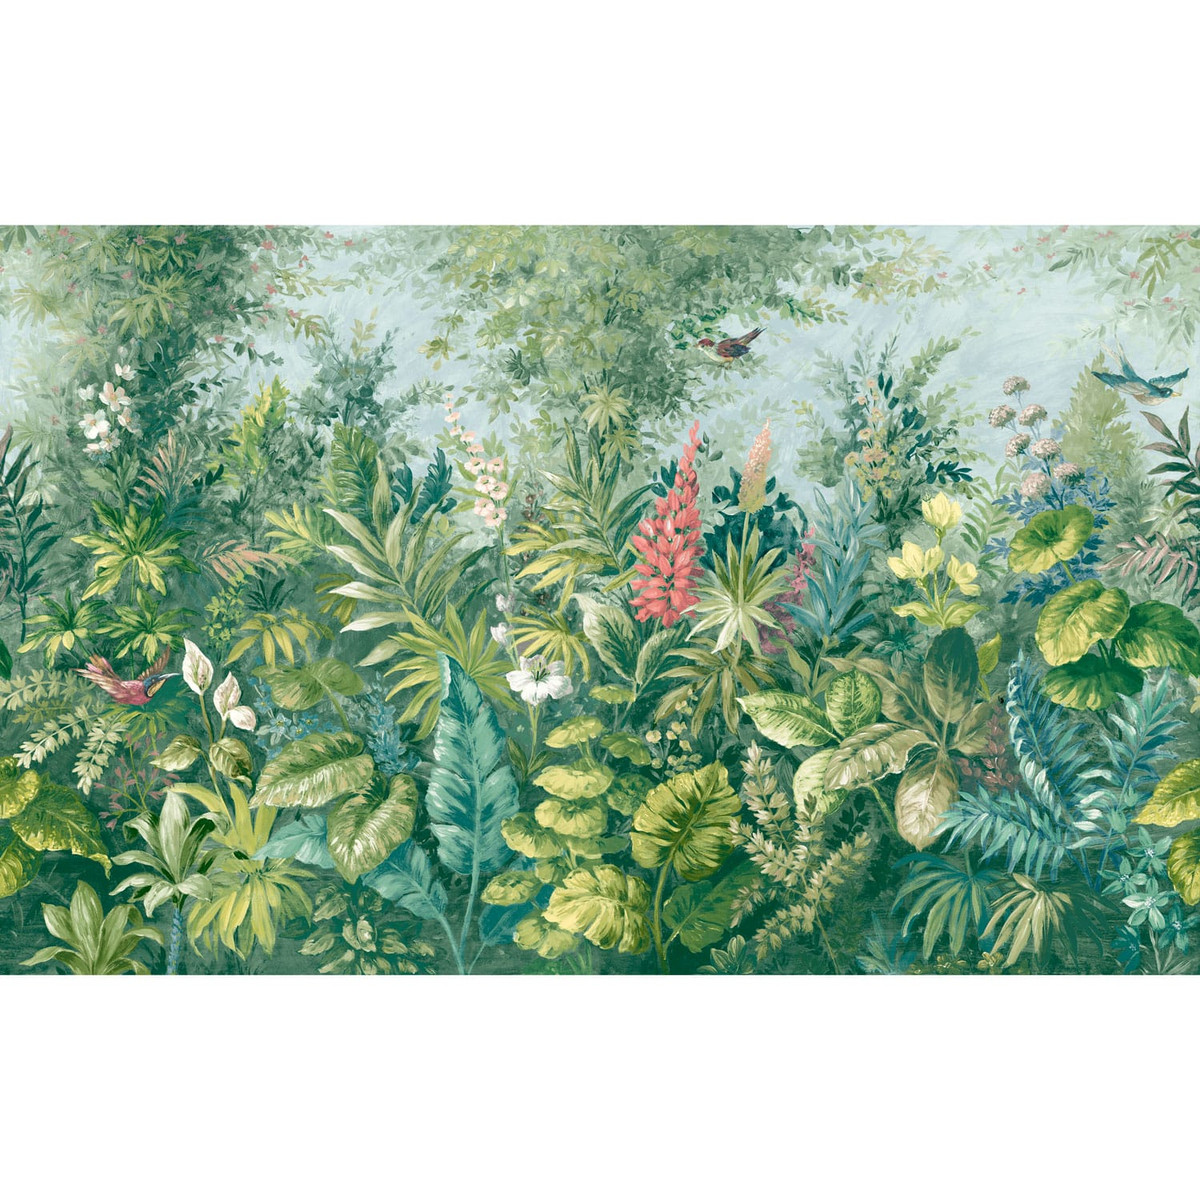 Fantasium Meadow Botanico Bespoke Mural